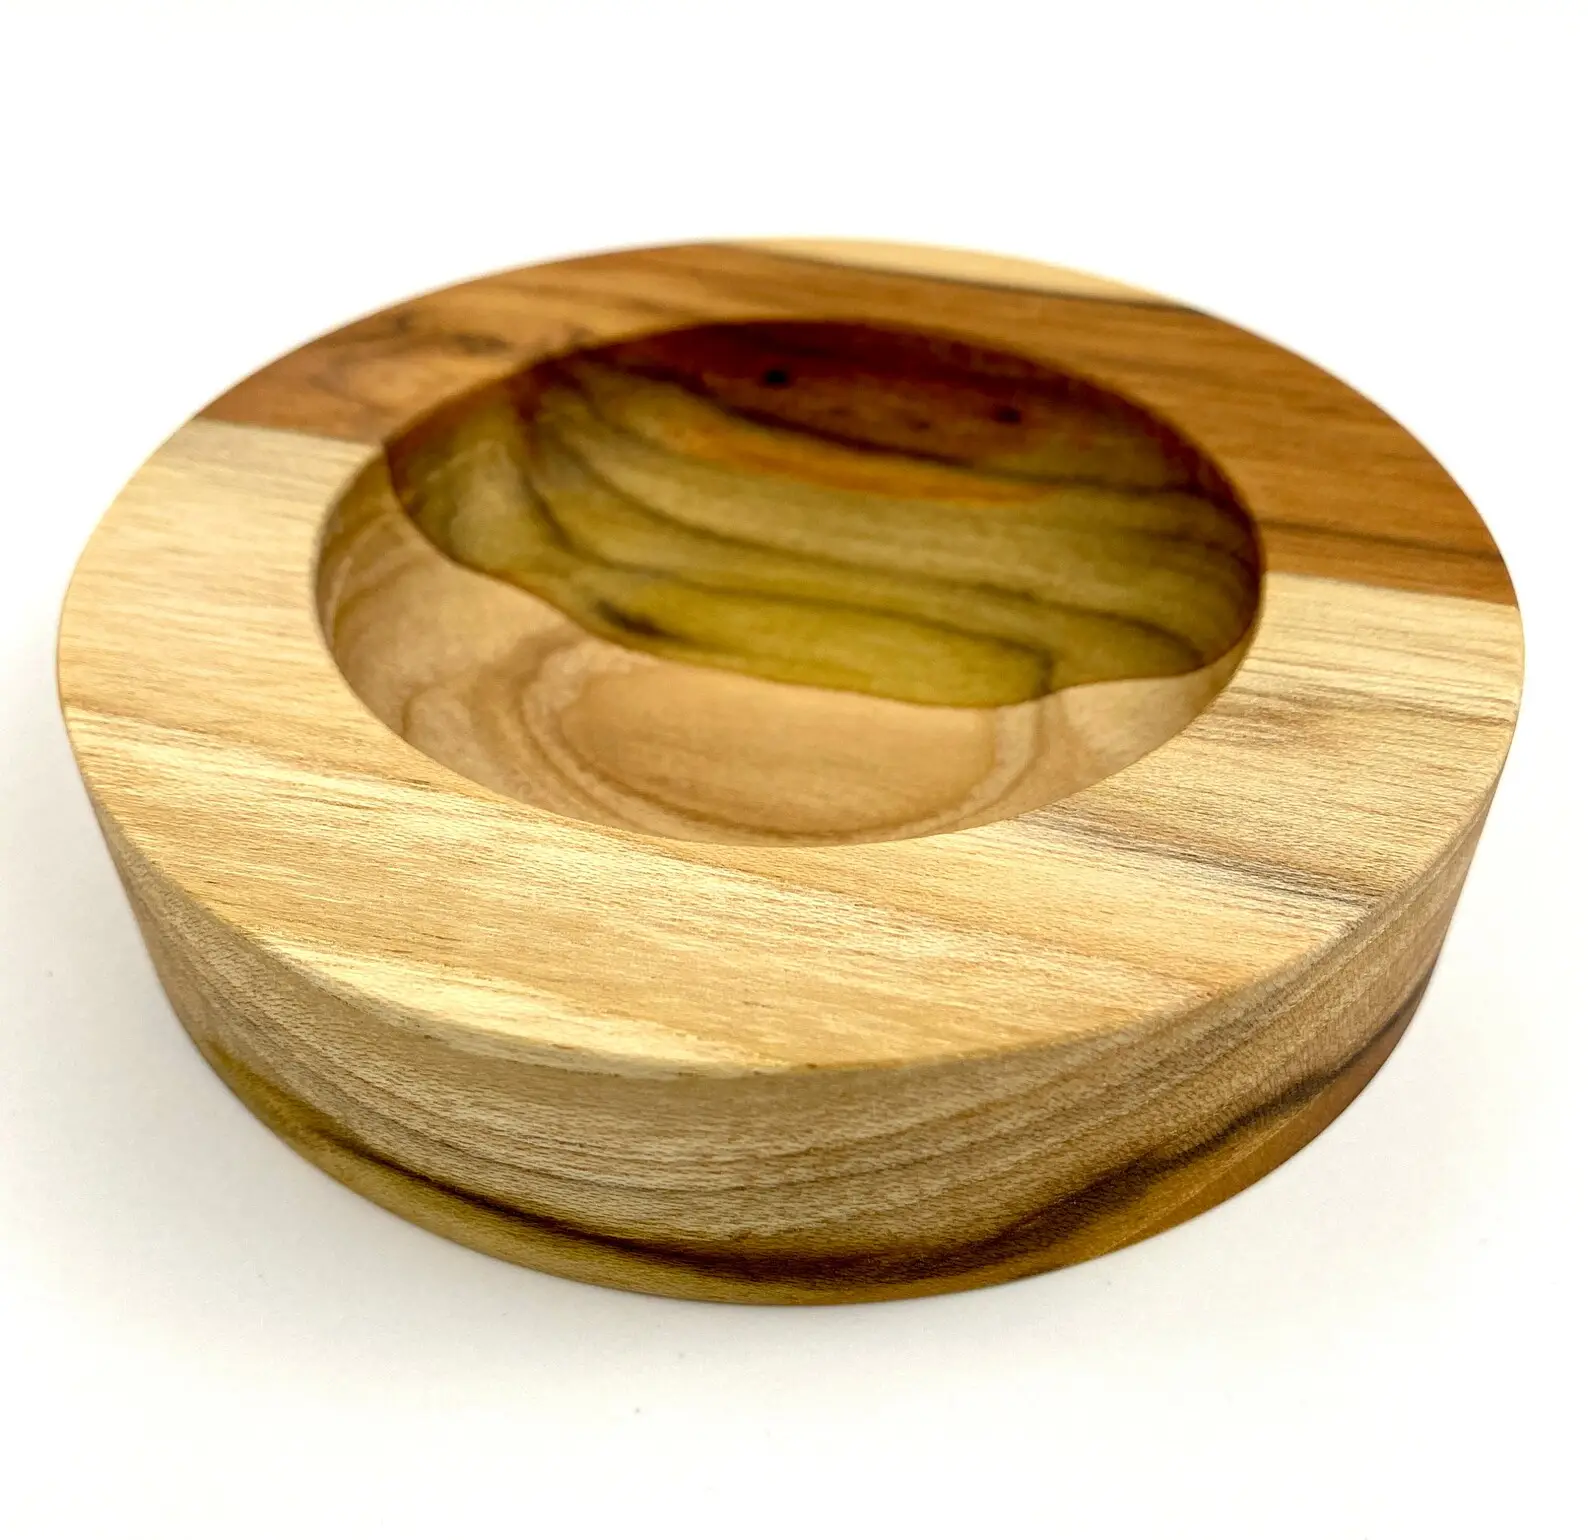 丸型木製灰皿プレミアム木製シガレット灰皿家庭用およびオフィス用木製シガーアクセサリー灰皿ホルダートレイ